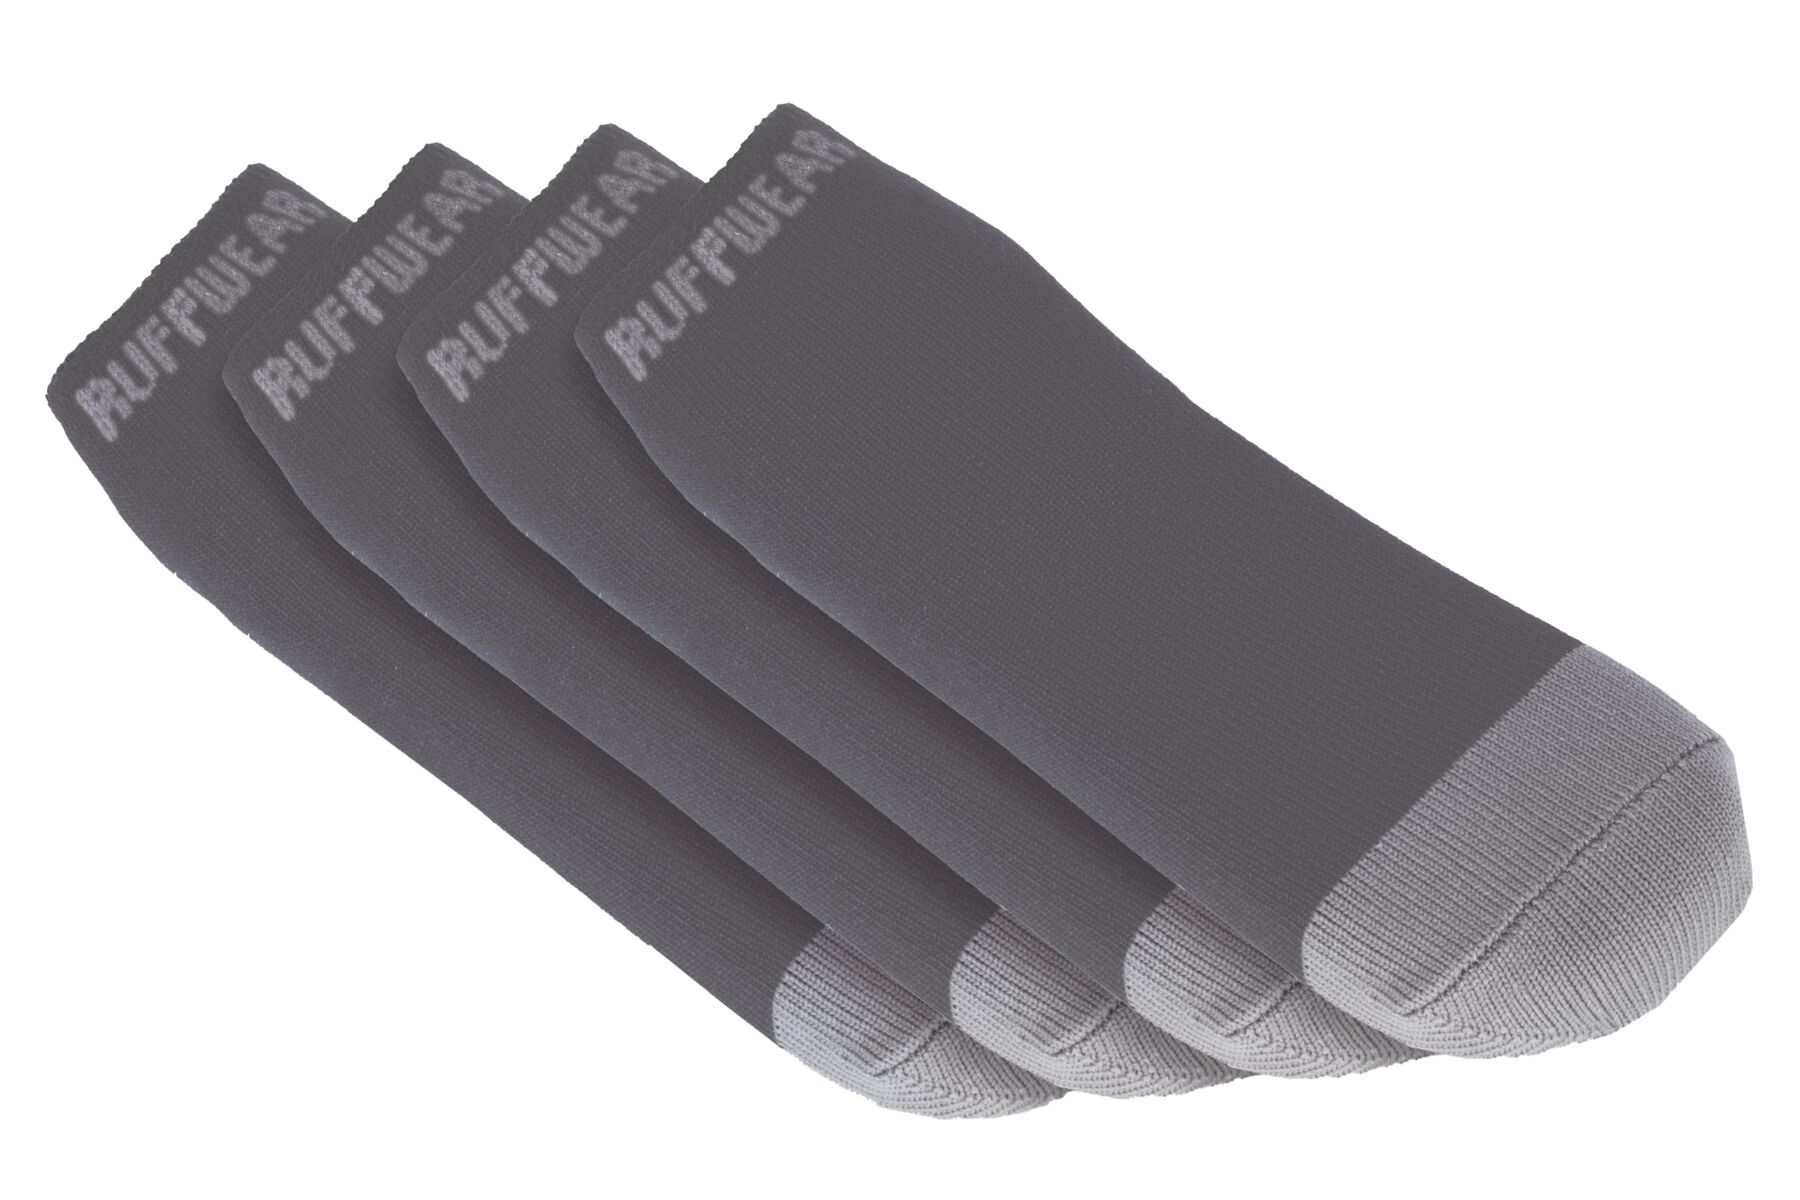 Chausettes pour chien bark'n boot™ comfortable et séchage rapide, lot de quatre. Couleur: twilight gray (gris), taille: l (76-83mm)